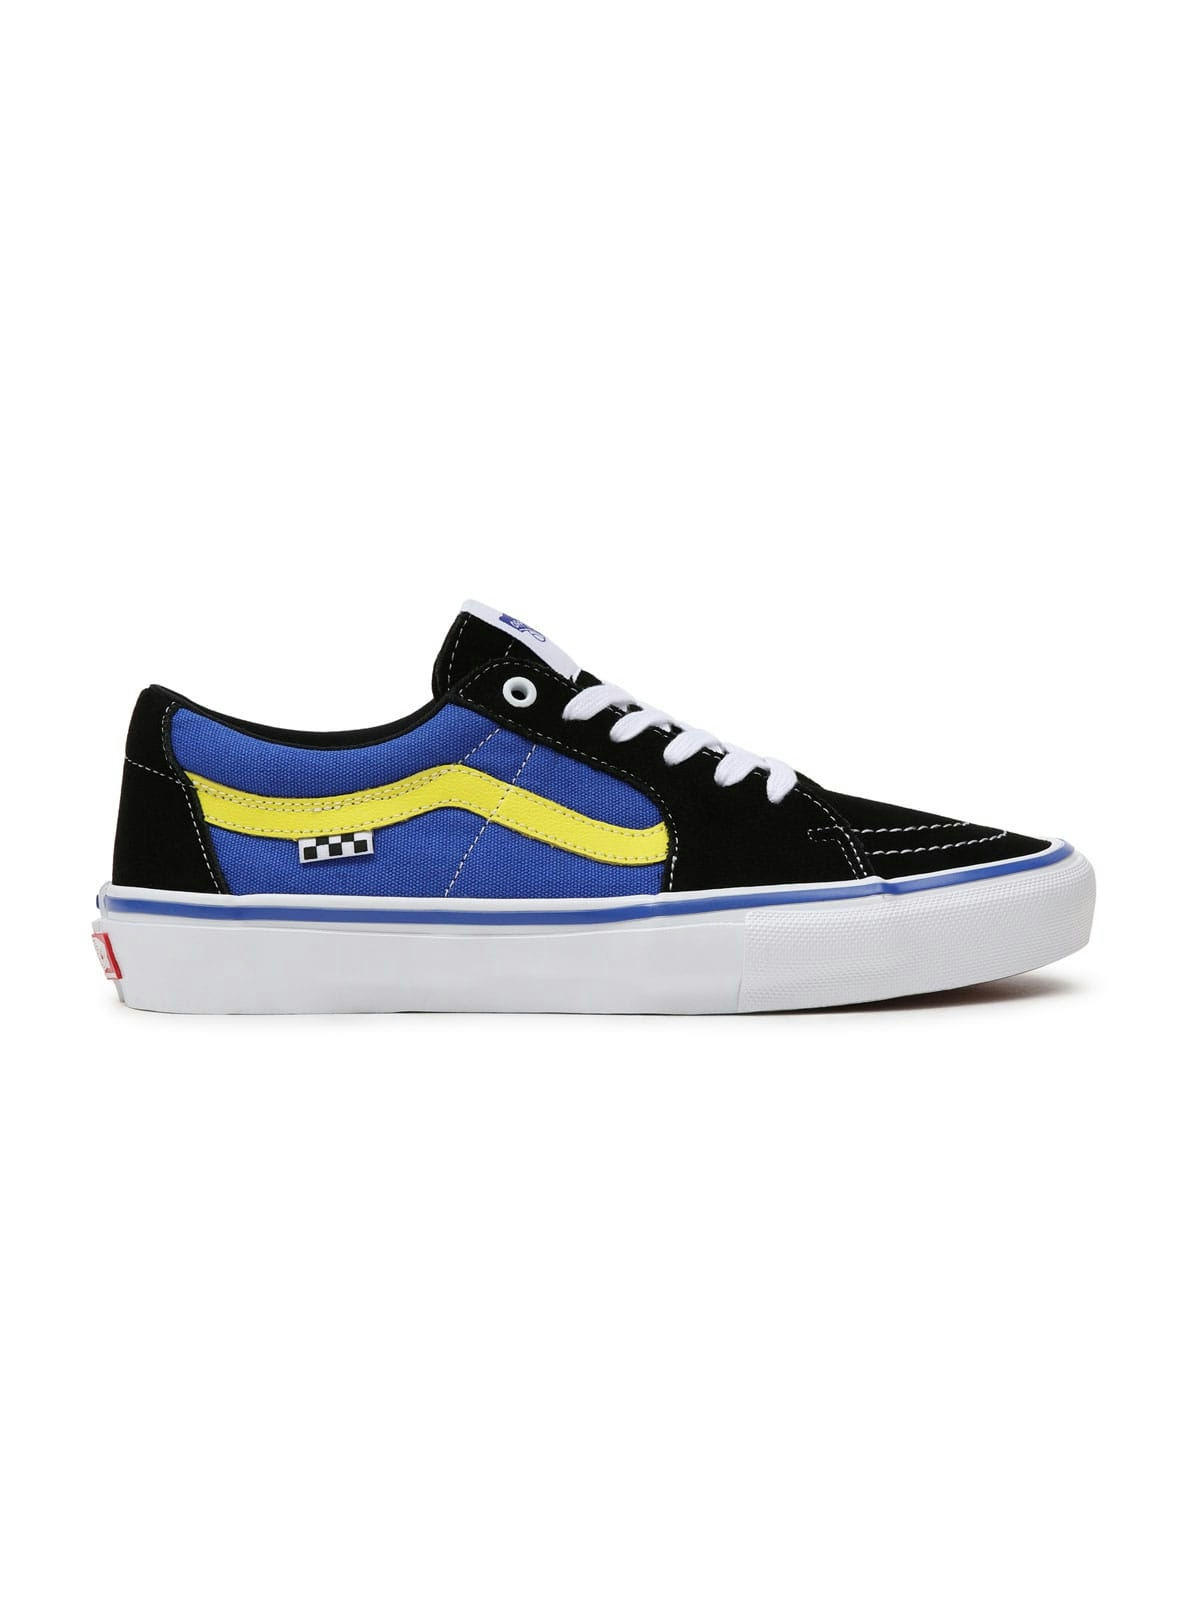 Vans Skate SK8-Low Shoes Black/Dazzling Blue 2